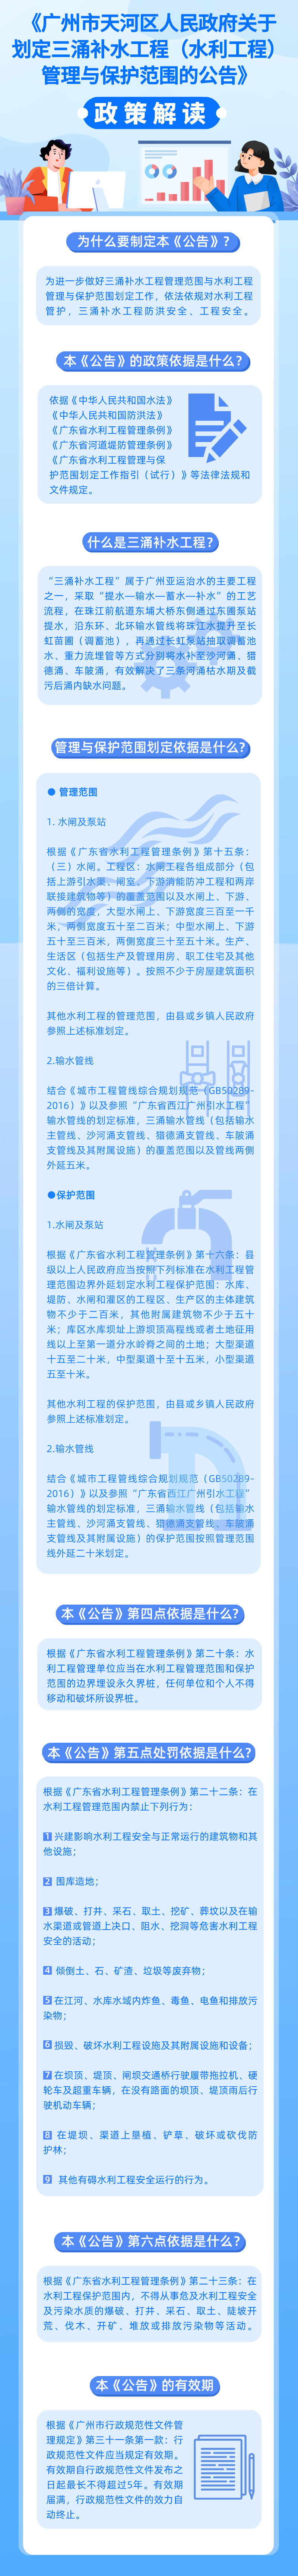 《广州市天河区人民政府关于划定三涌补水工程（水利工程）管理与保护范围的公告》的政策解读 图解.png